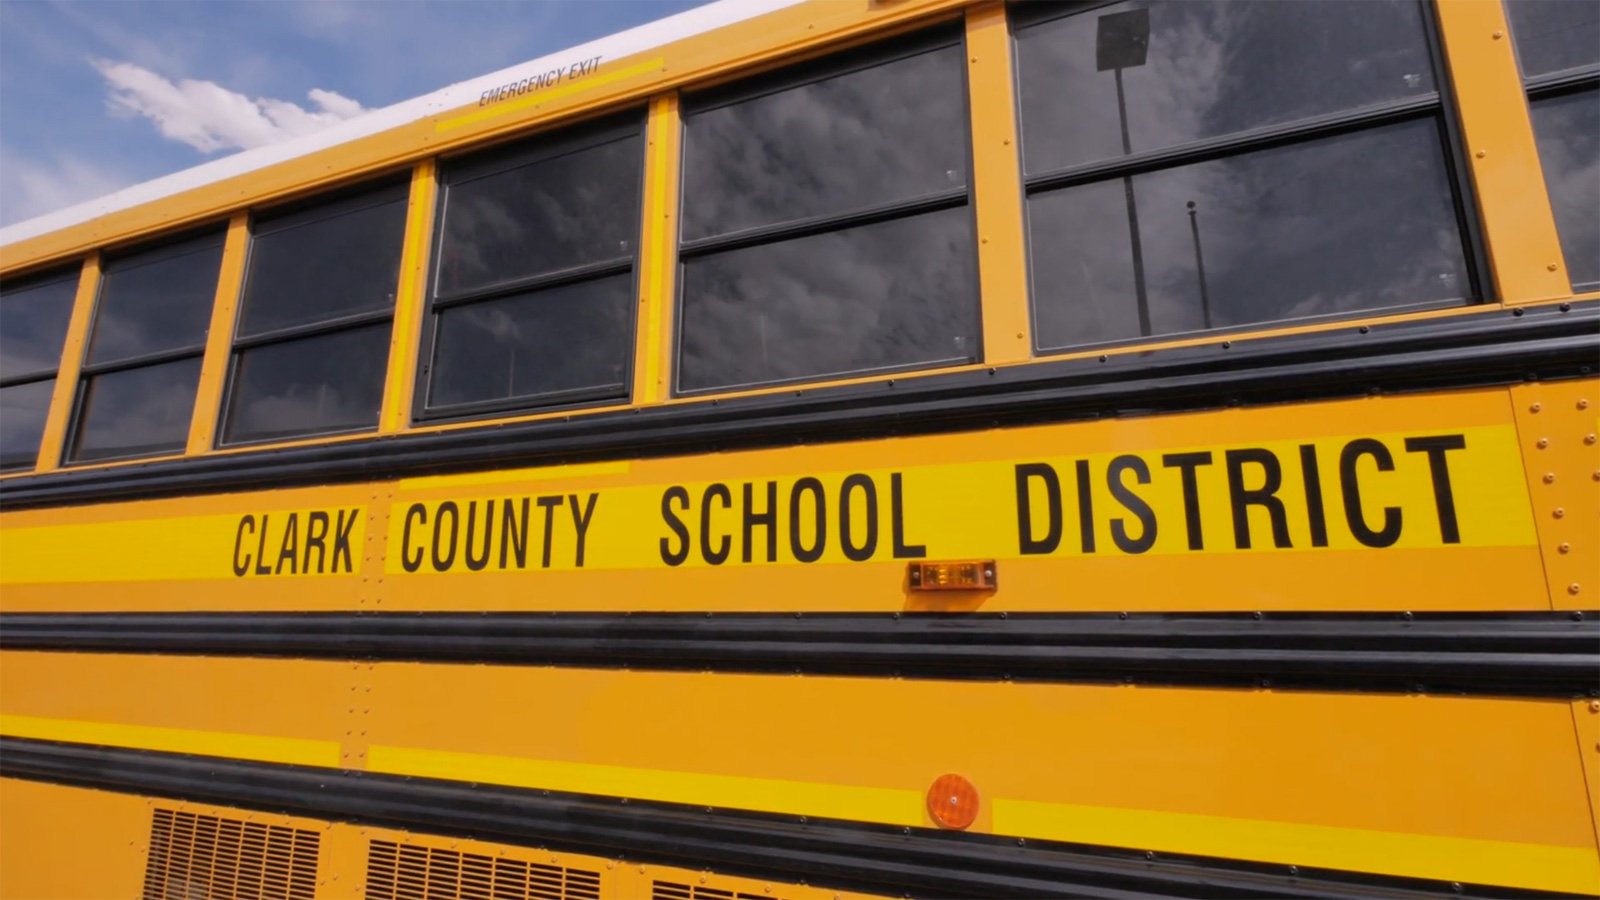 Clark County School District Bus